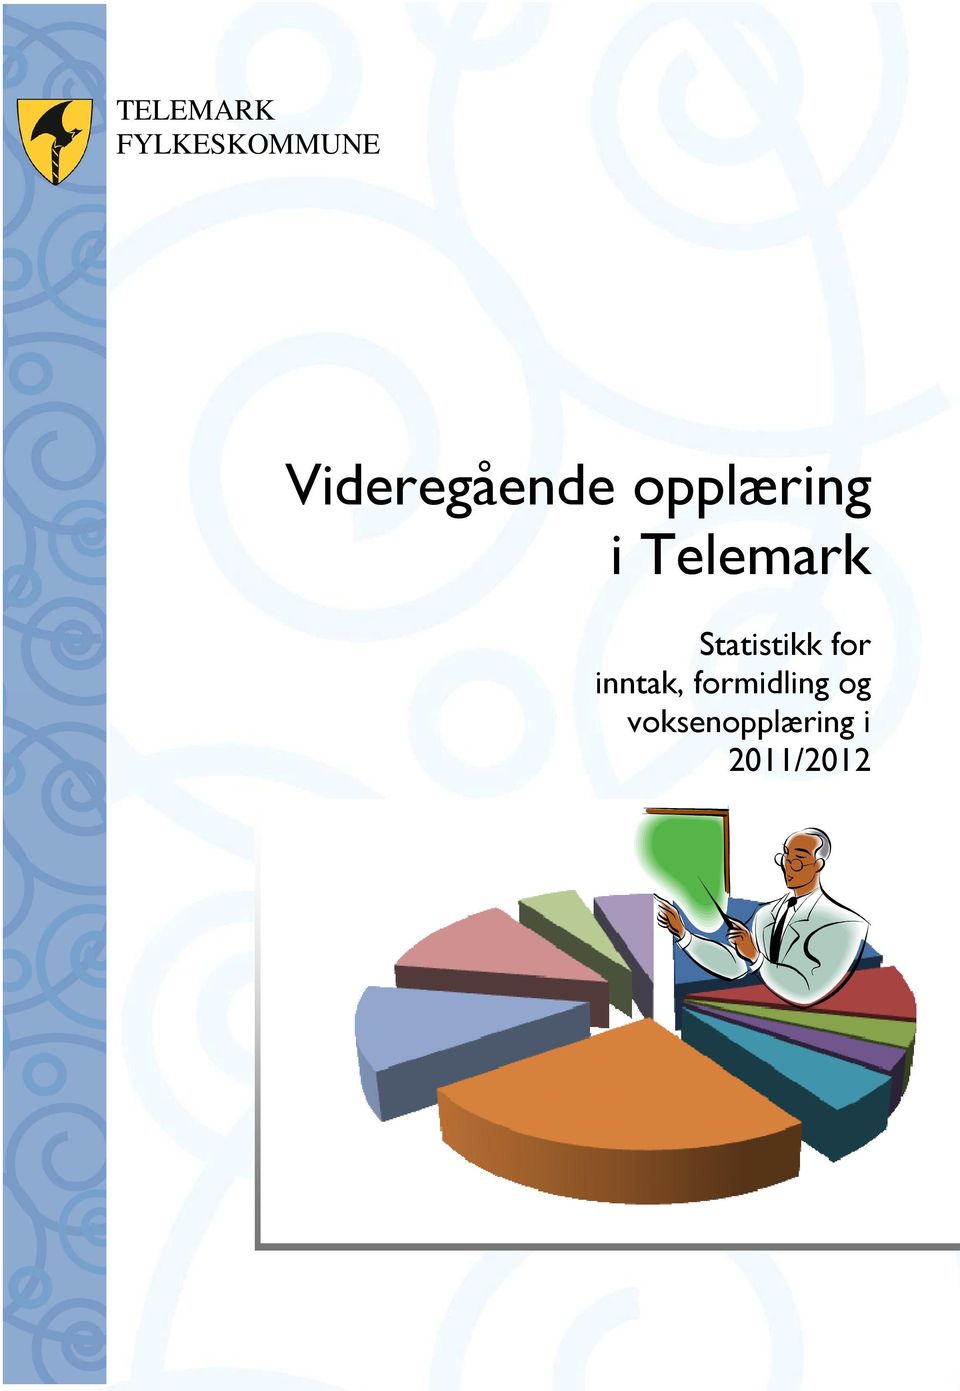 Telemark Statistikk for